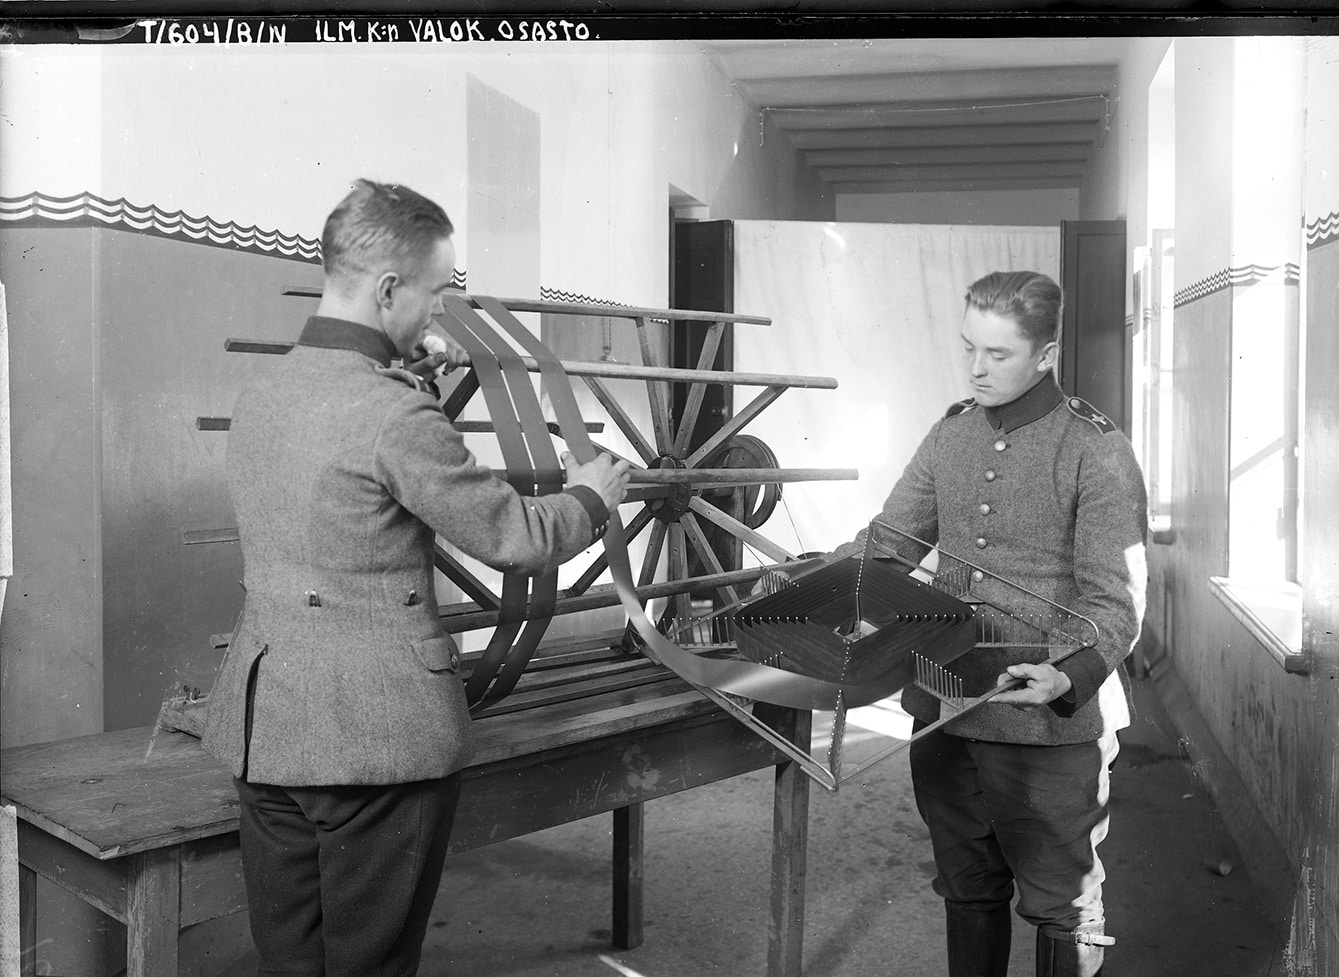 Vanha kuva, jossa kaksi miestä käsittelee pitkää valokuvanegatiivia.